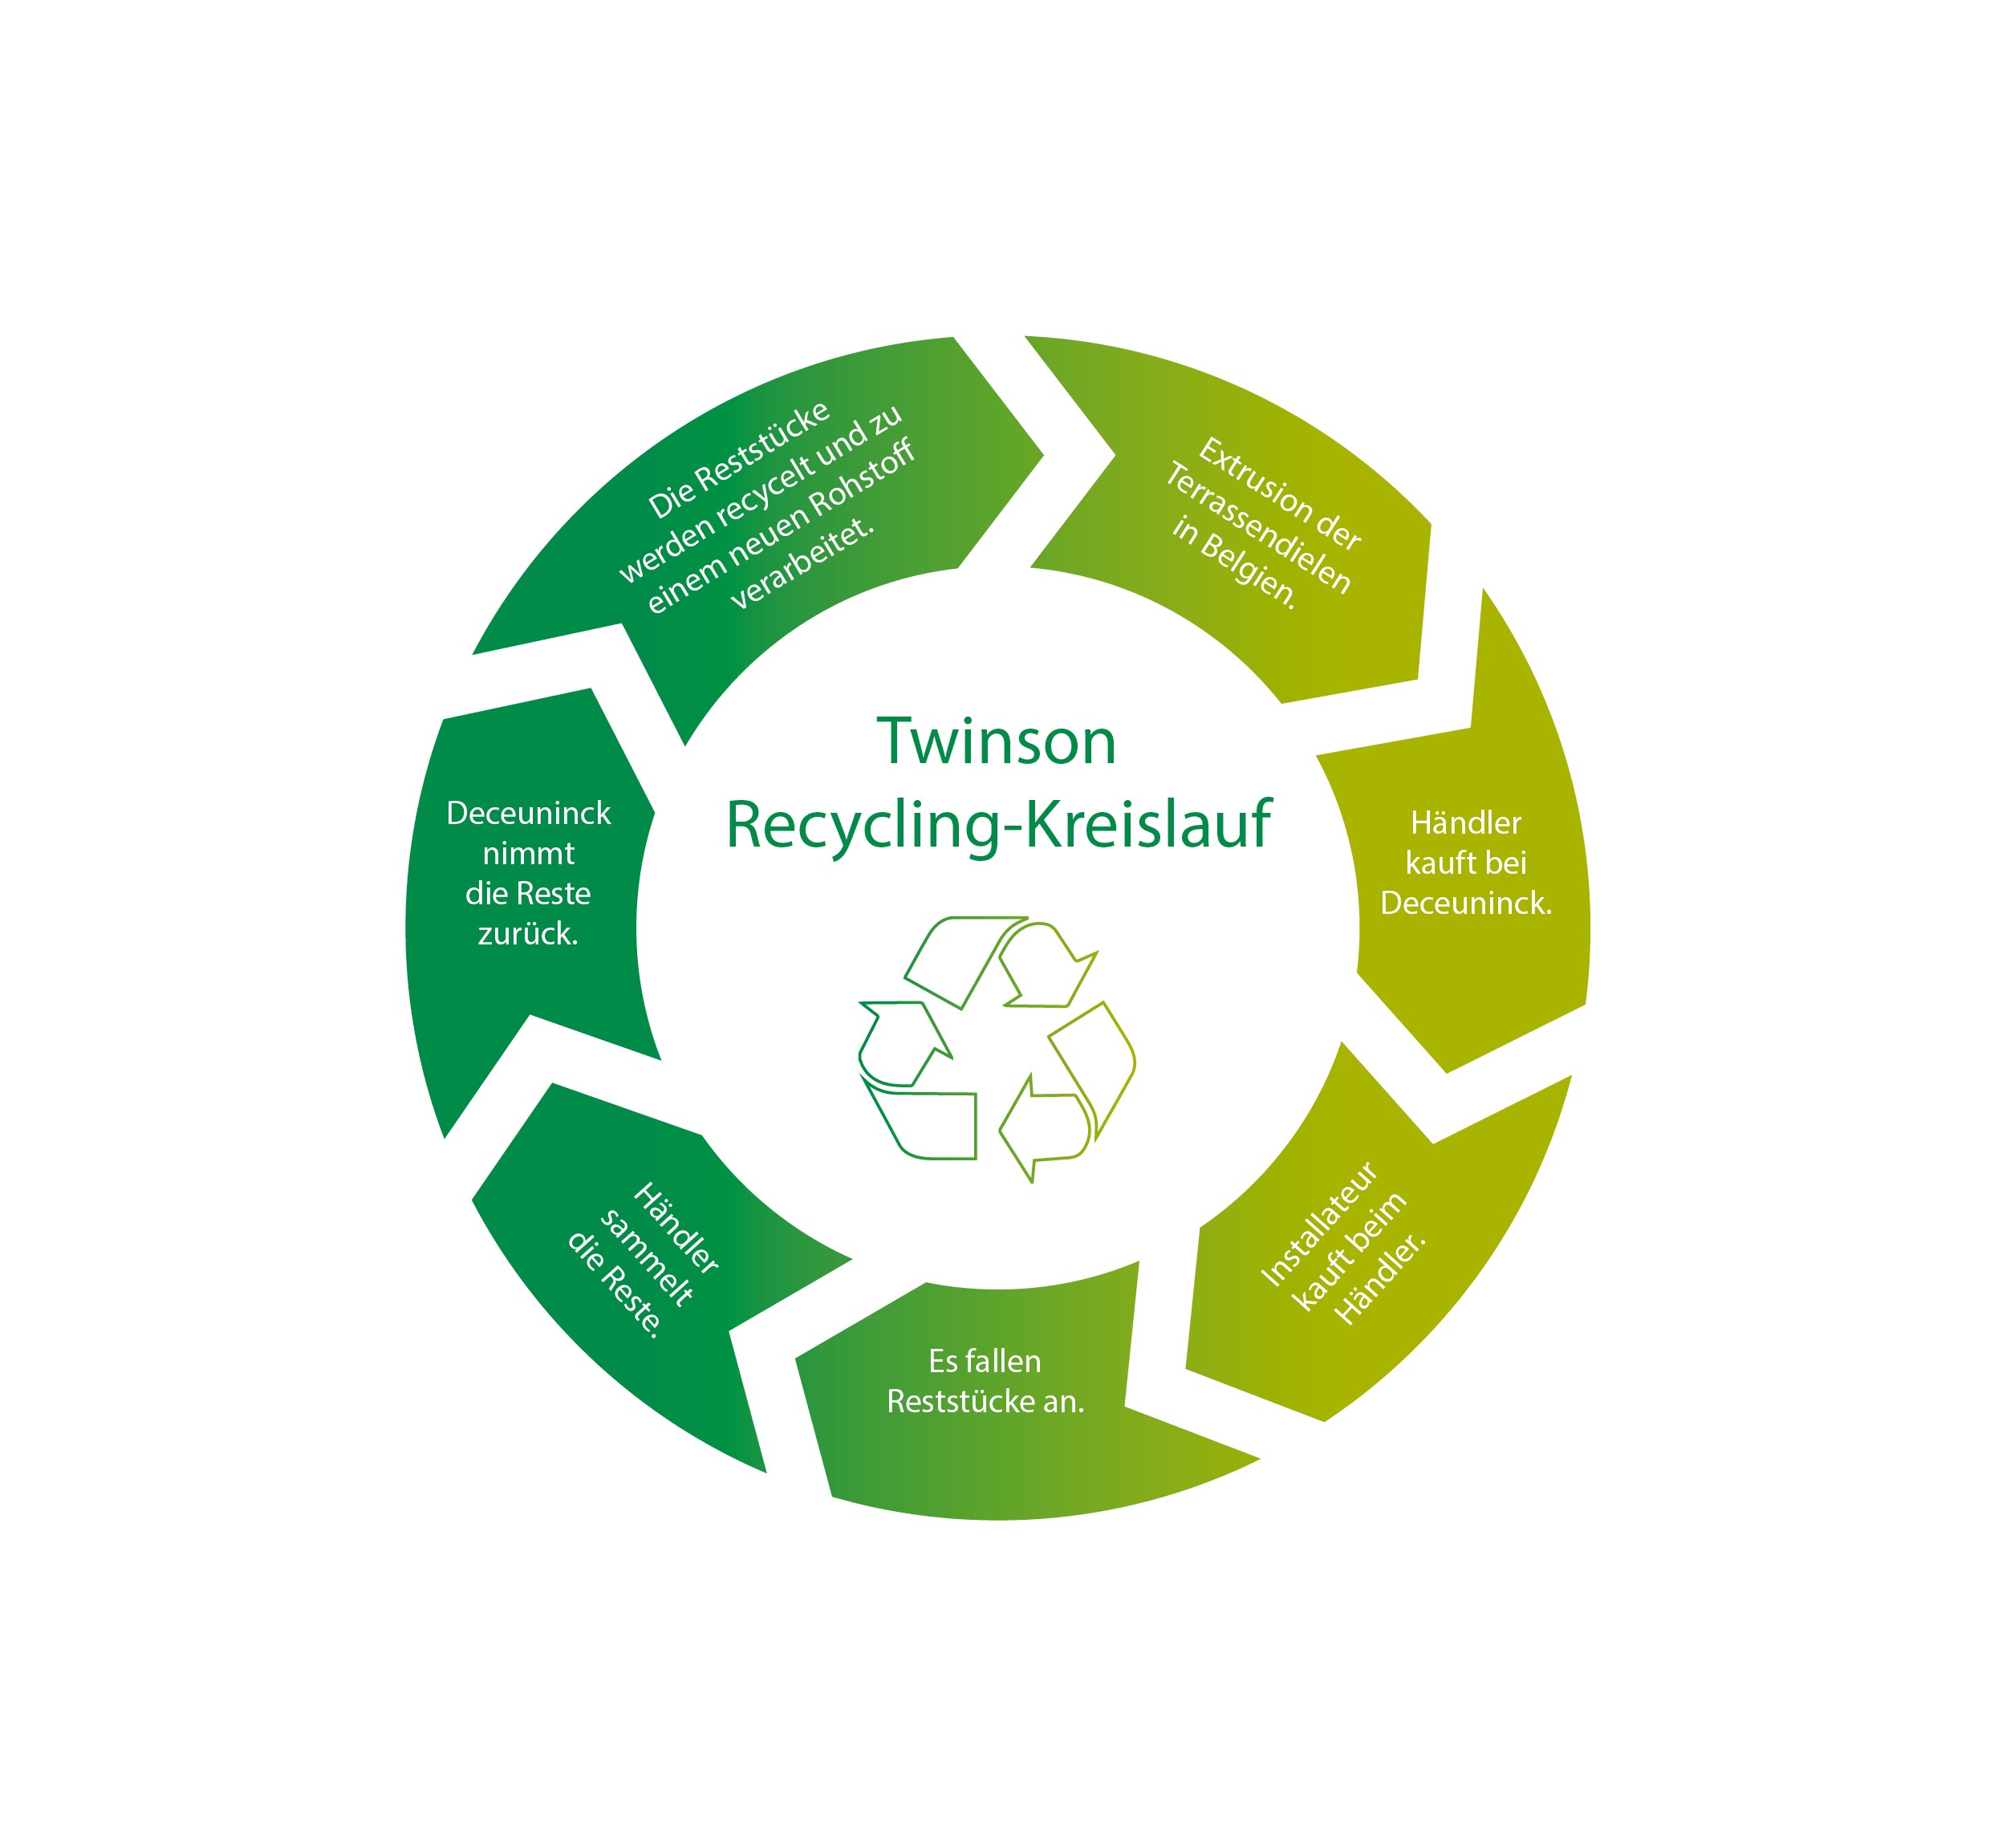 Twinson-Recyclinglreislauf.jpg